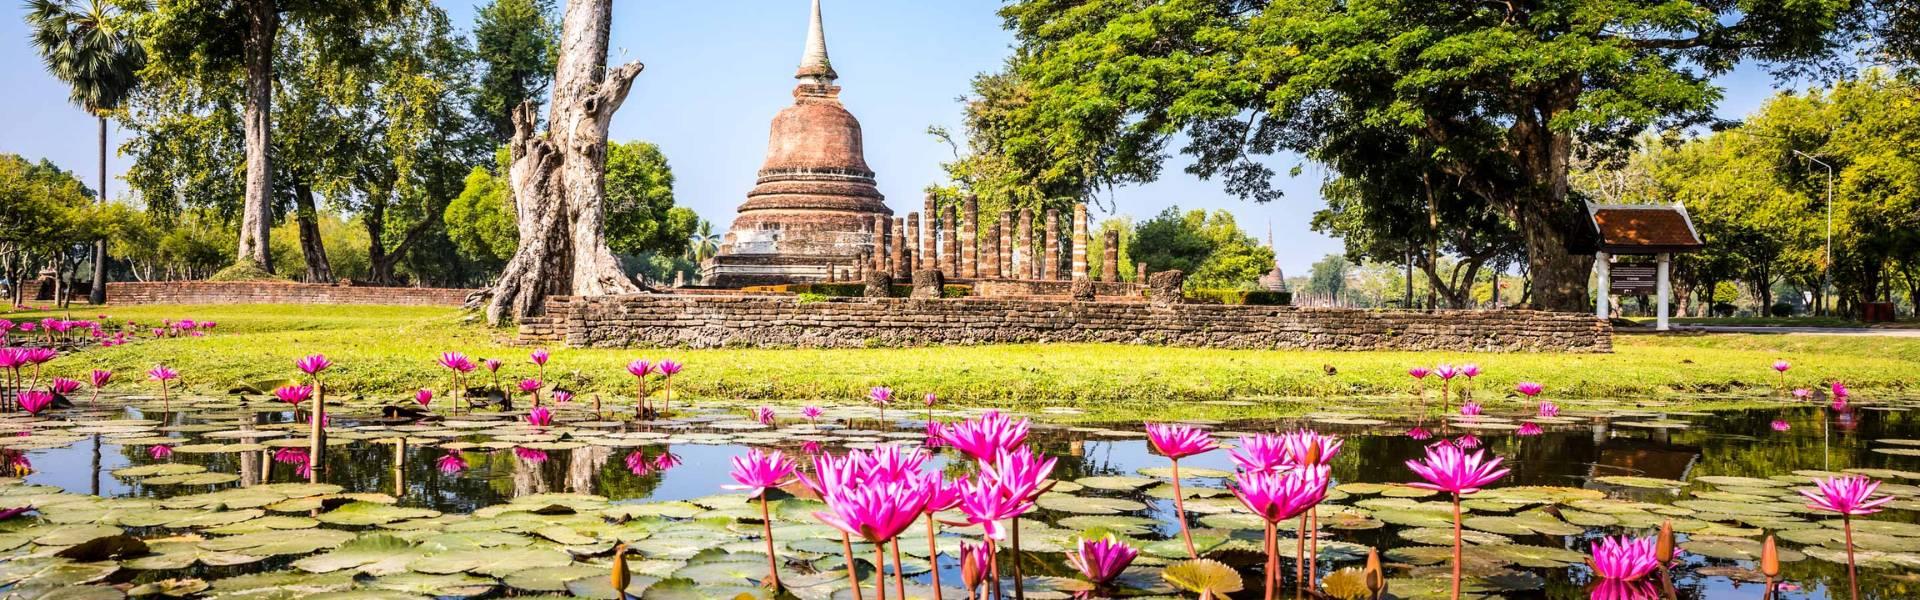 Guide de voyage de Sukhothai | Voyage en Thaïlande avec Asiatica Travel